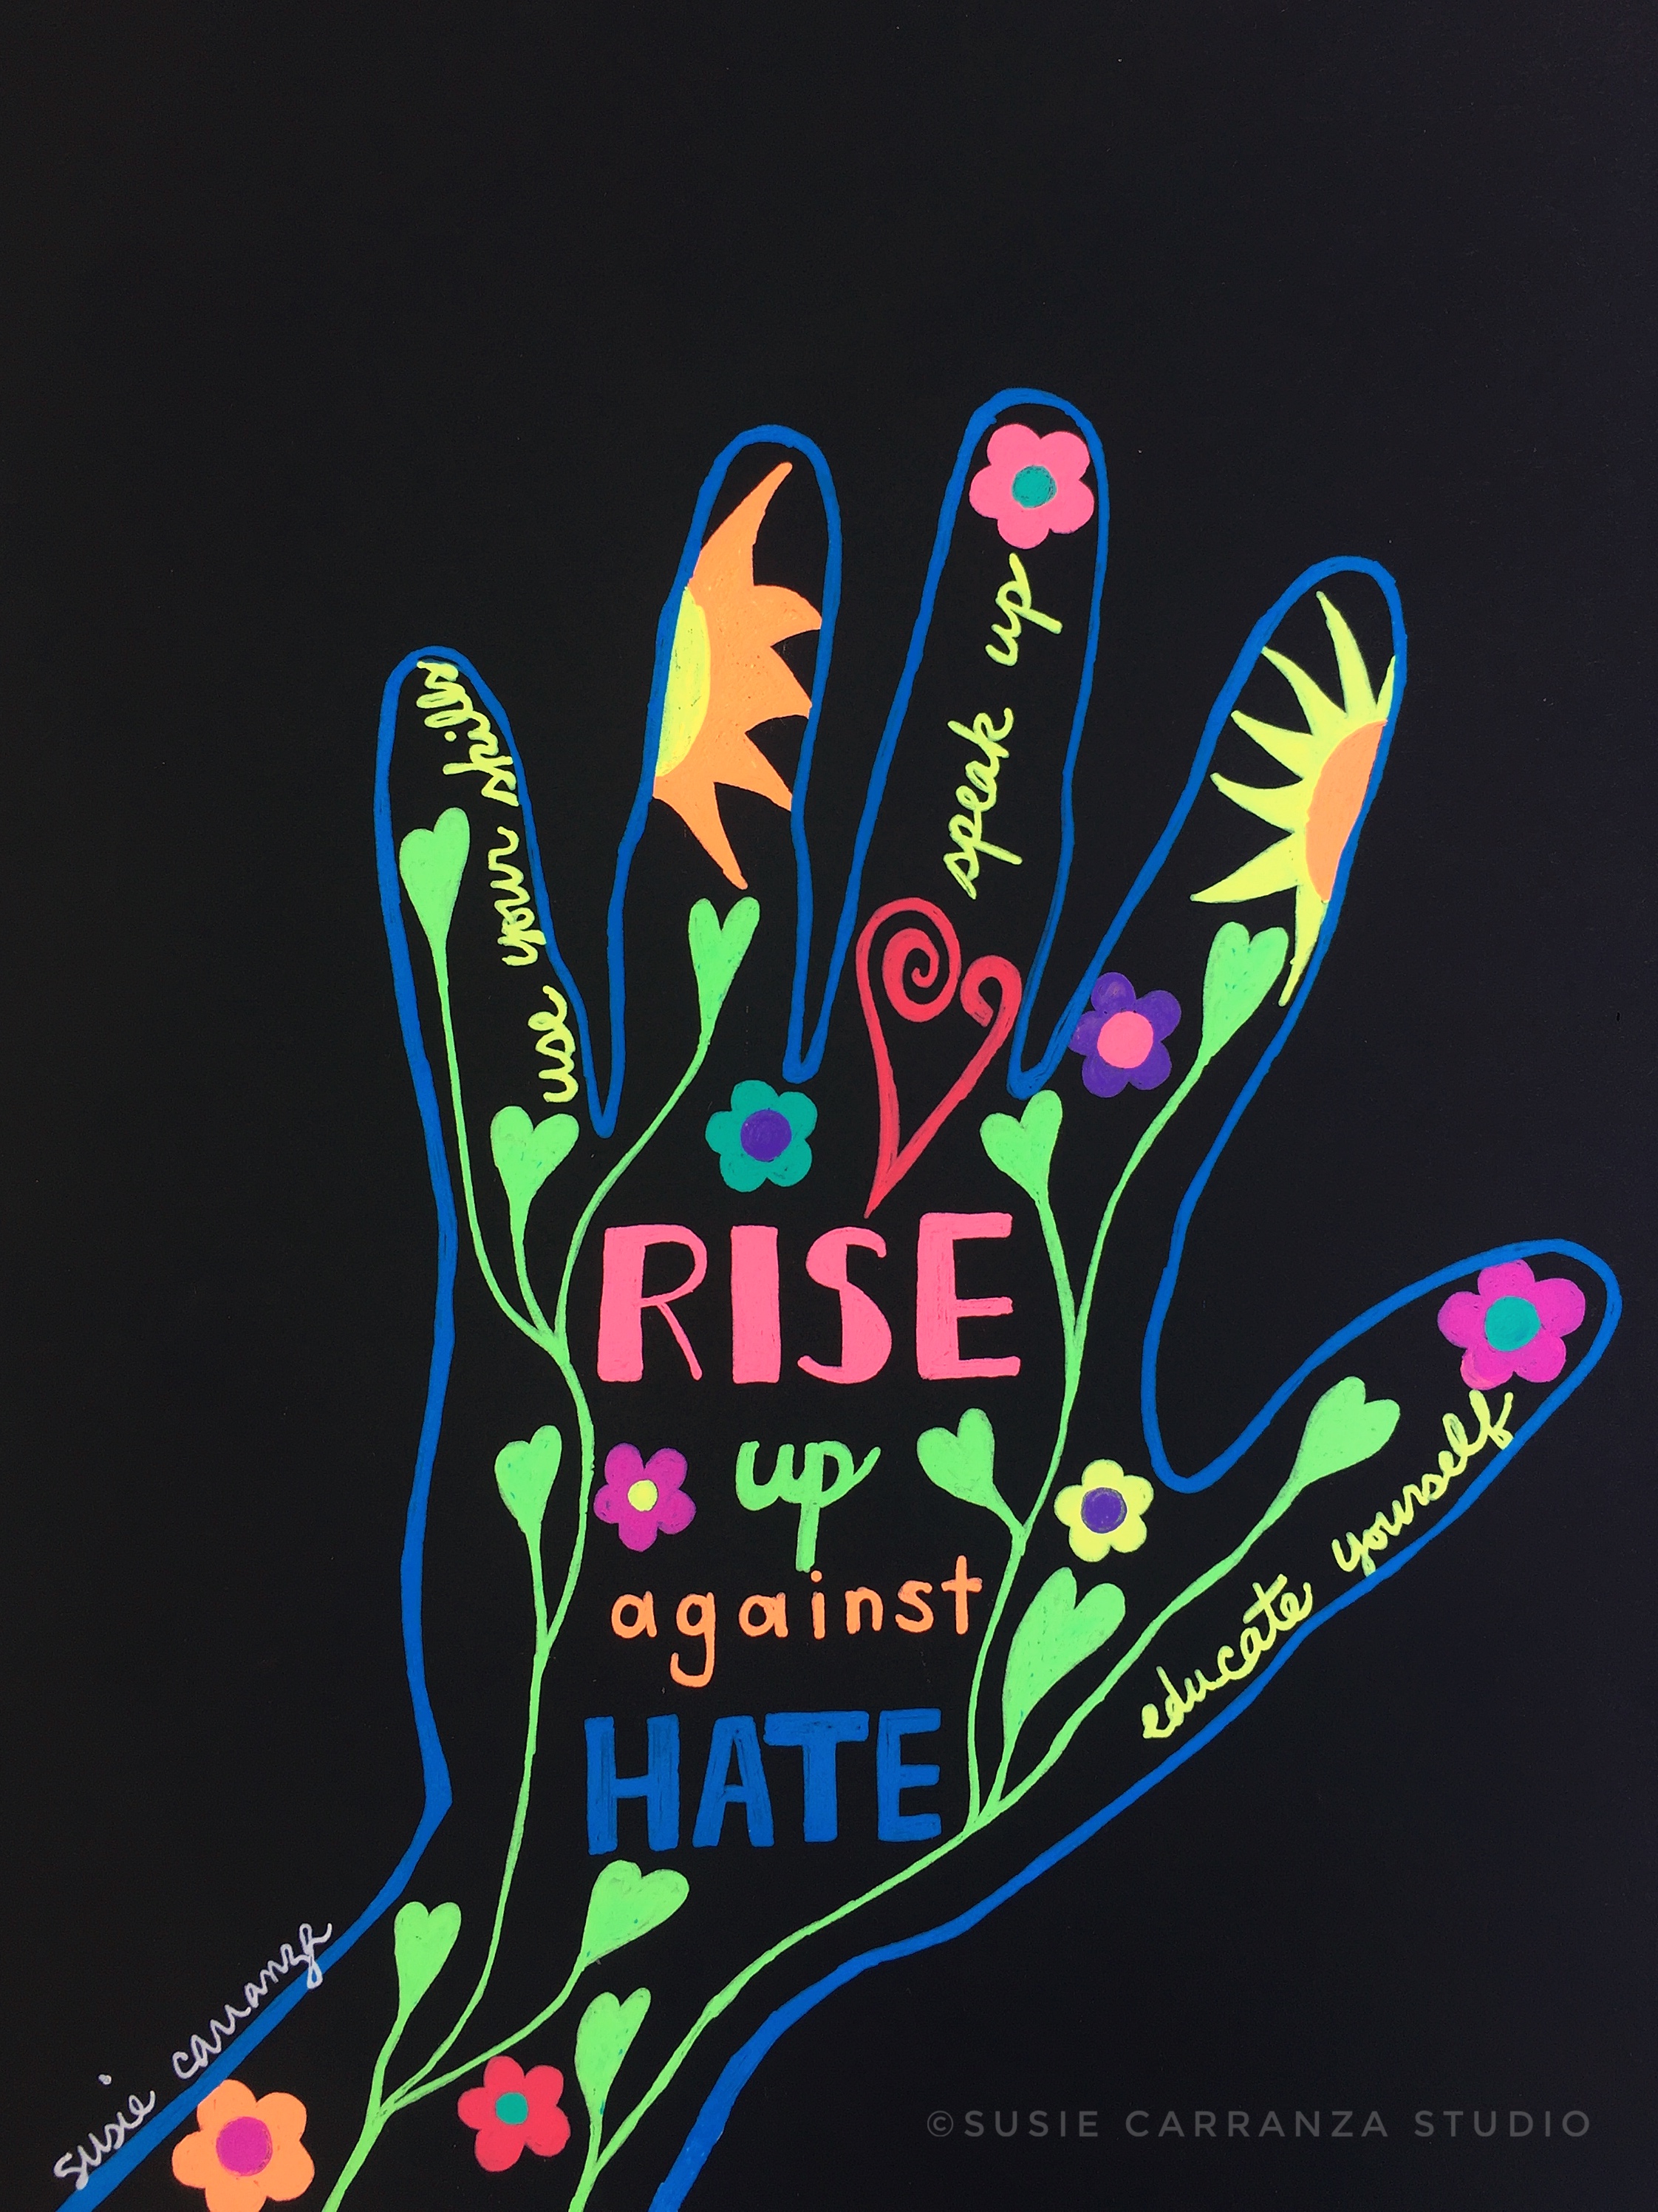 Rise Up Against Hate- susie carranza studio